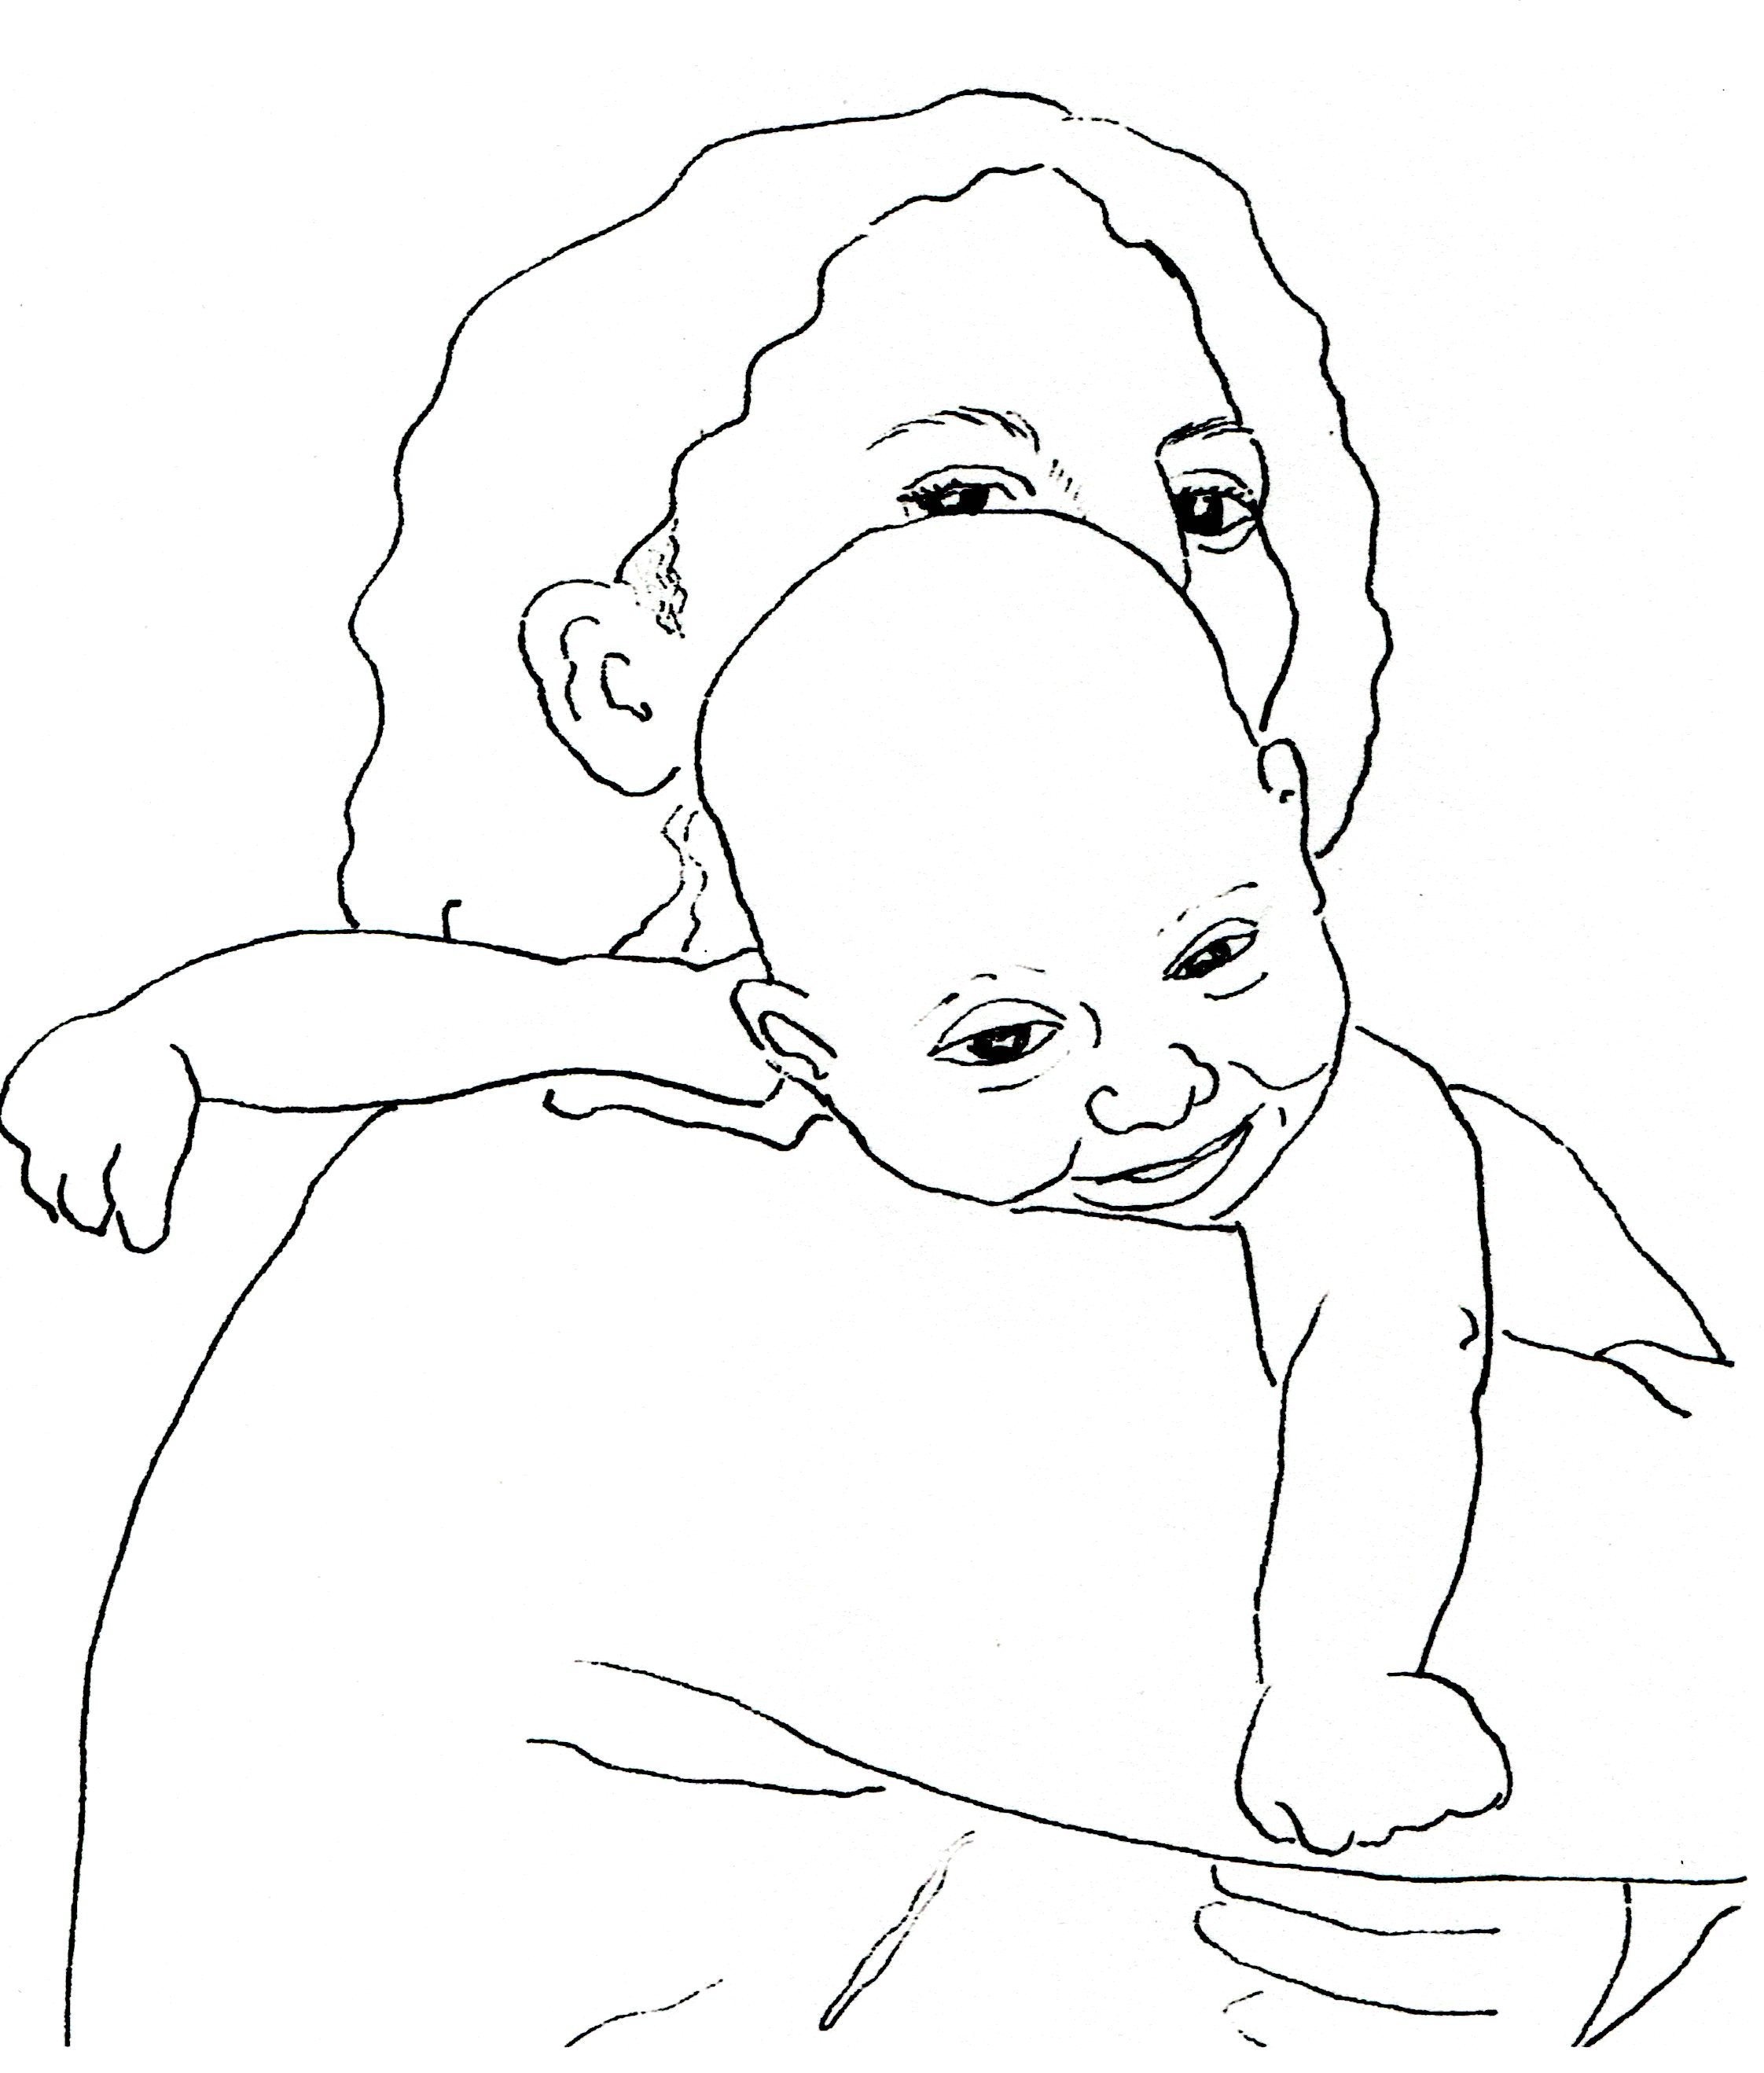 Infant on Mother's Shoulder, Smiling.jpg